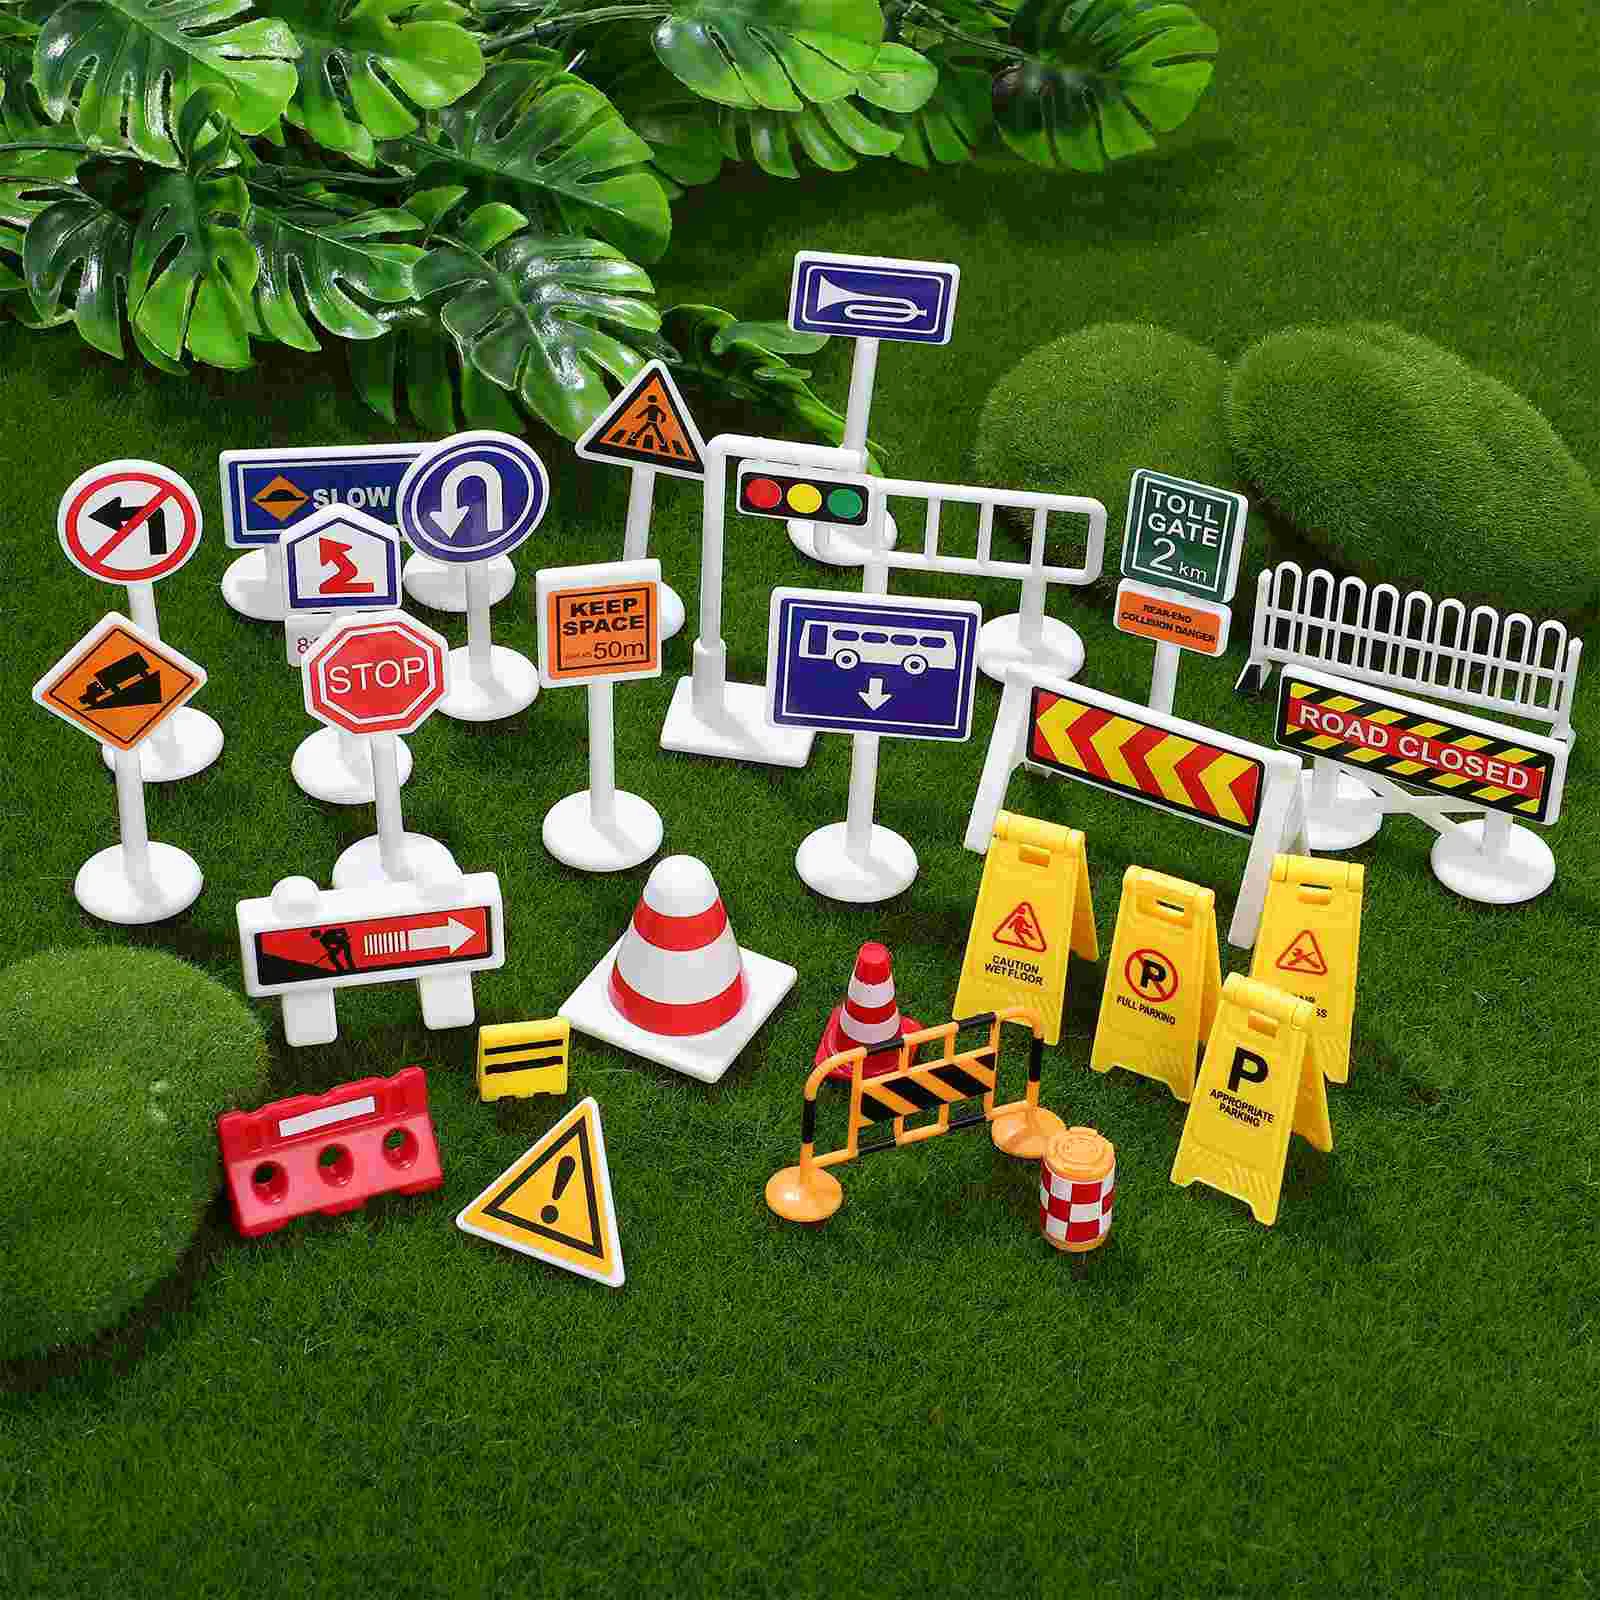 

Дорожные знаки для детей, набор дорожных знаков, уличный сигнал, дорожные игрушки, набор моделей для детей